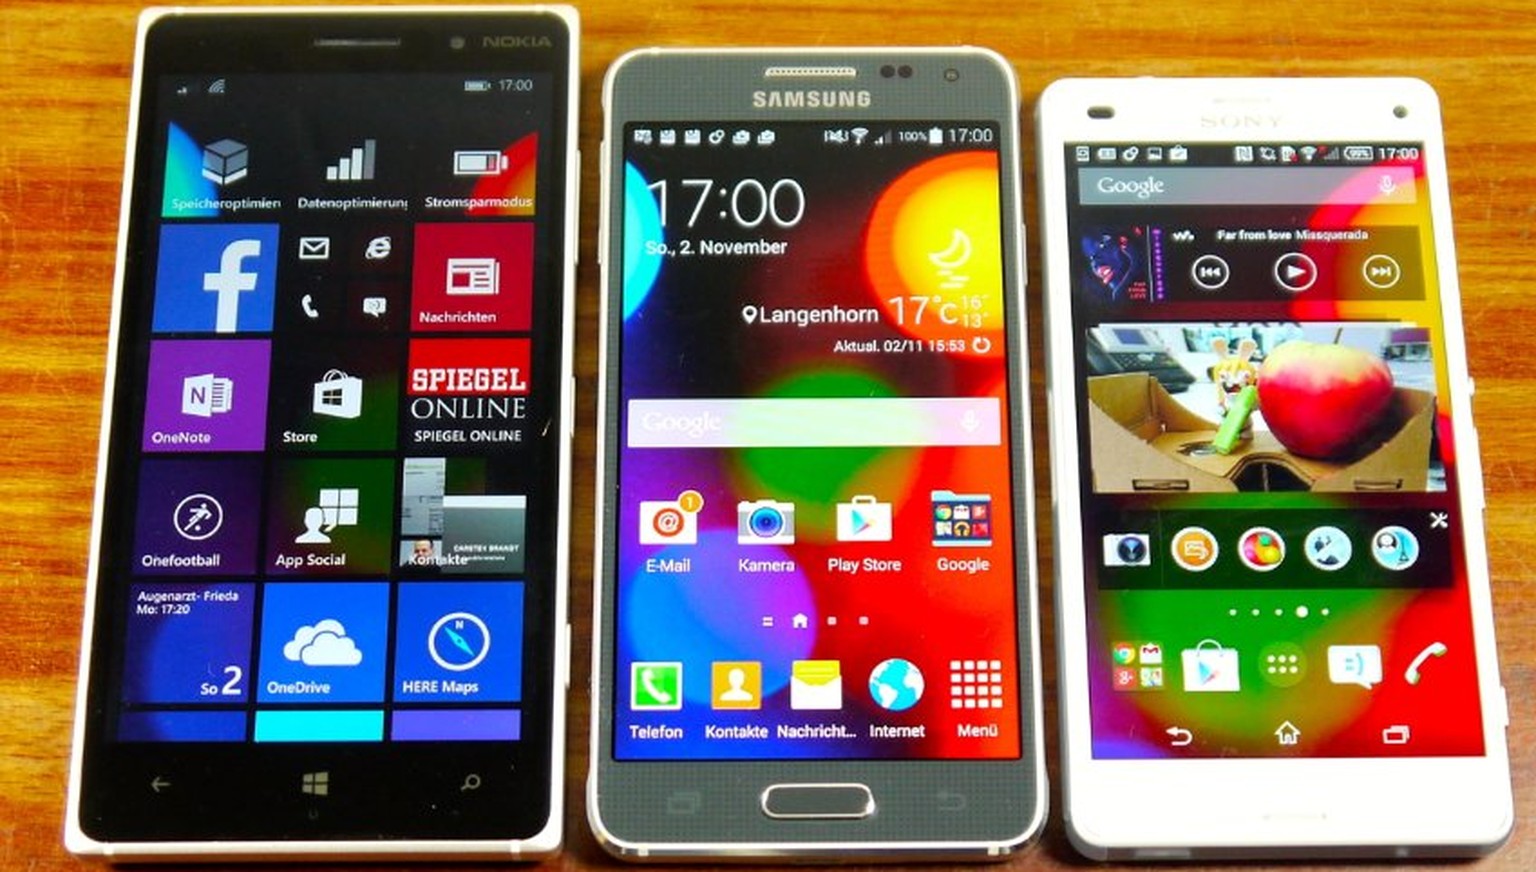 Drei bezahlbare Handys im Test: Nokia Lumia 830 mit Windows Phone sowie das Samsung Galaxy Alpha und Sony Xperia Z3 Compact mit Android.